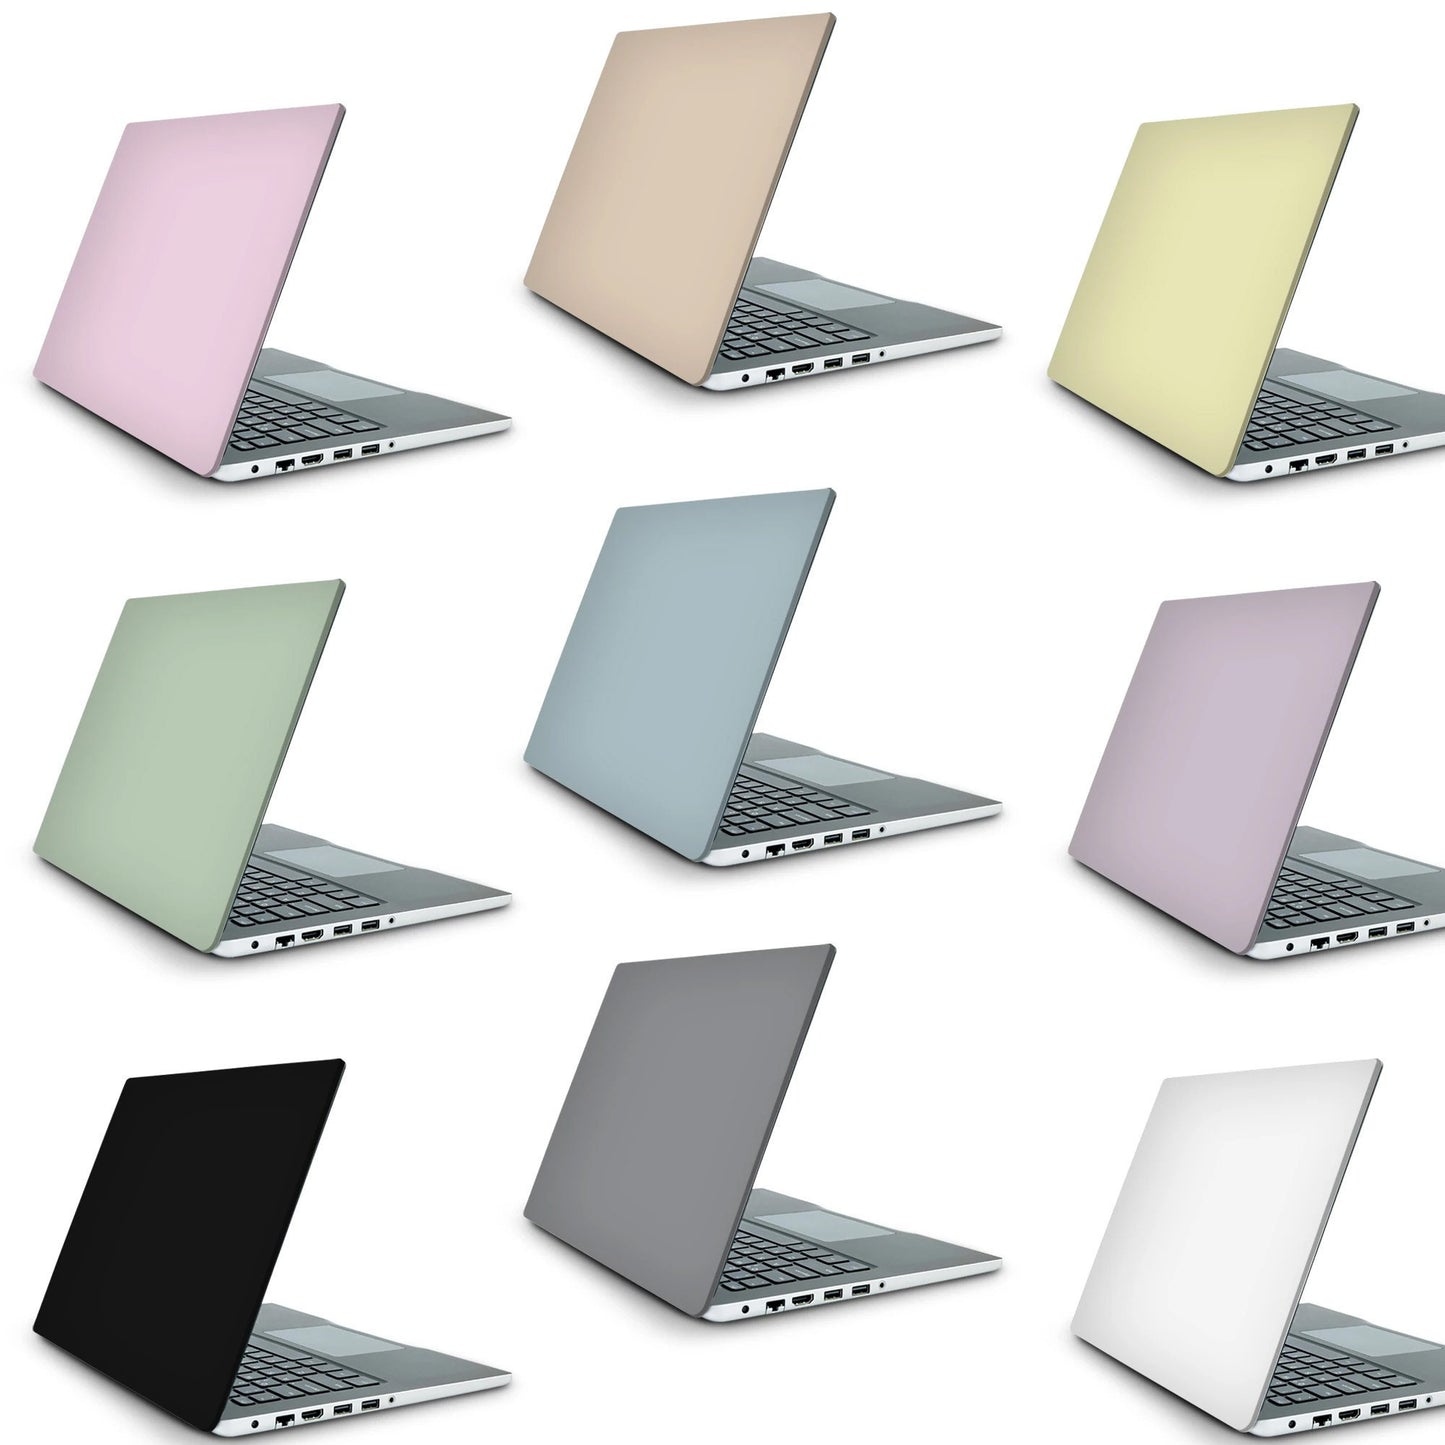 Sunset Laptop Skin, Laptop Cover, Laptop Skins, Removable Laptop Skins, Laptop Decal, Customized Laptop Skin, Laptop Stickers 325